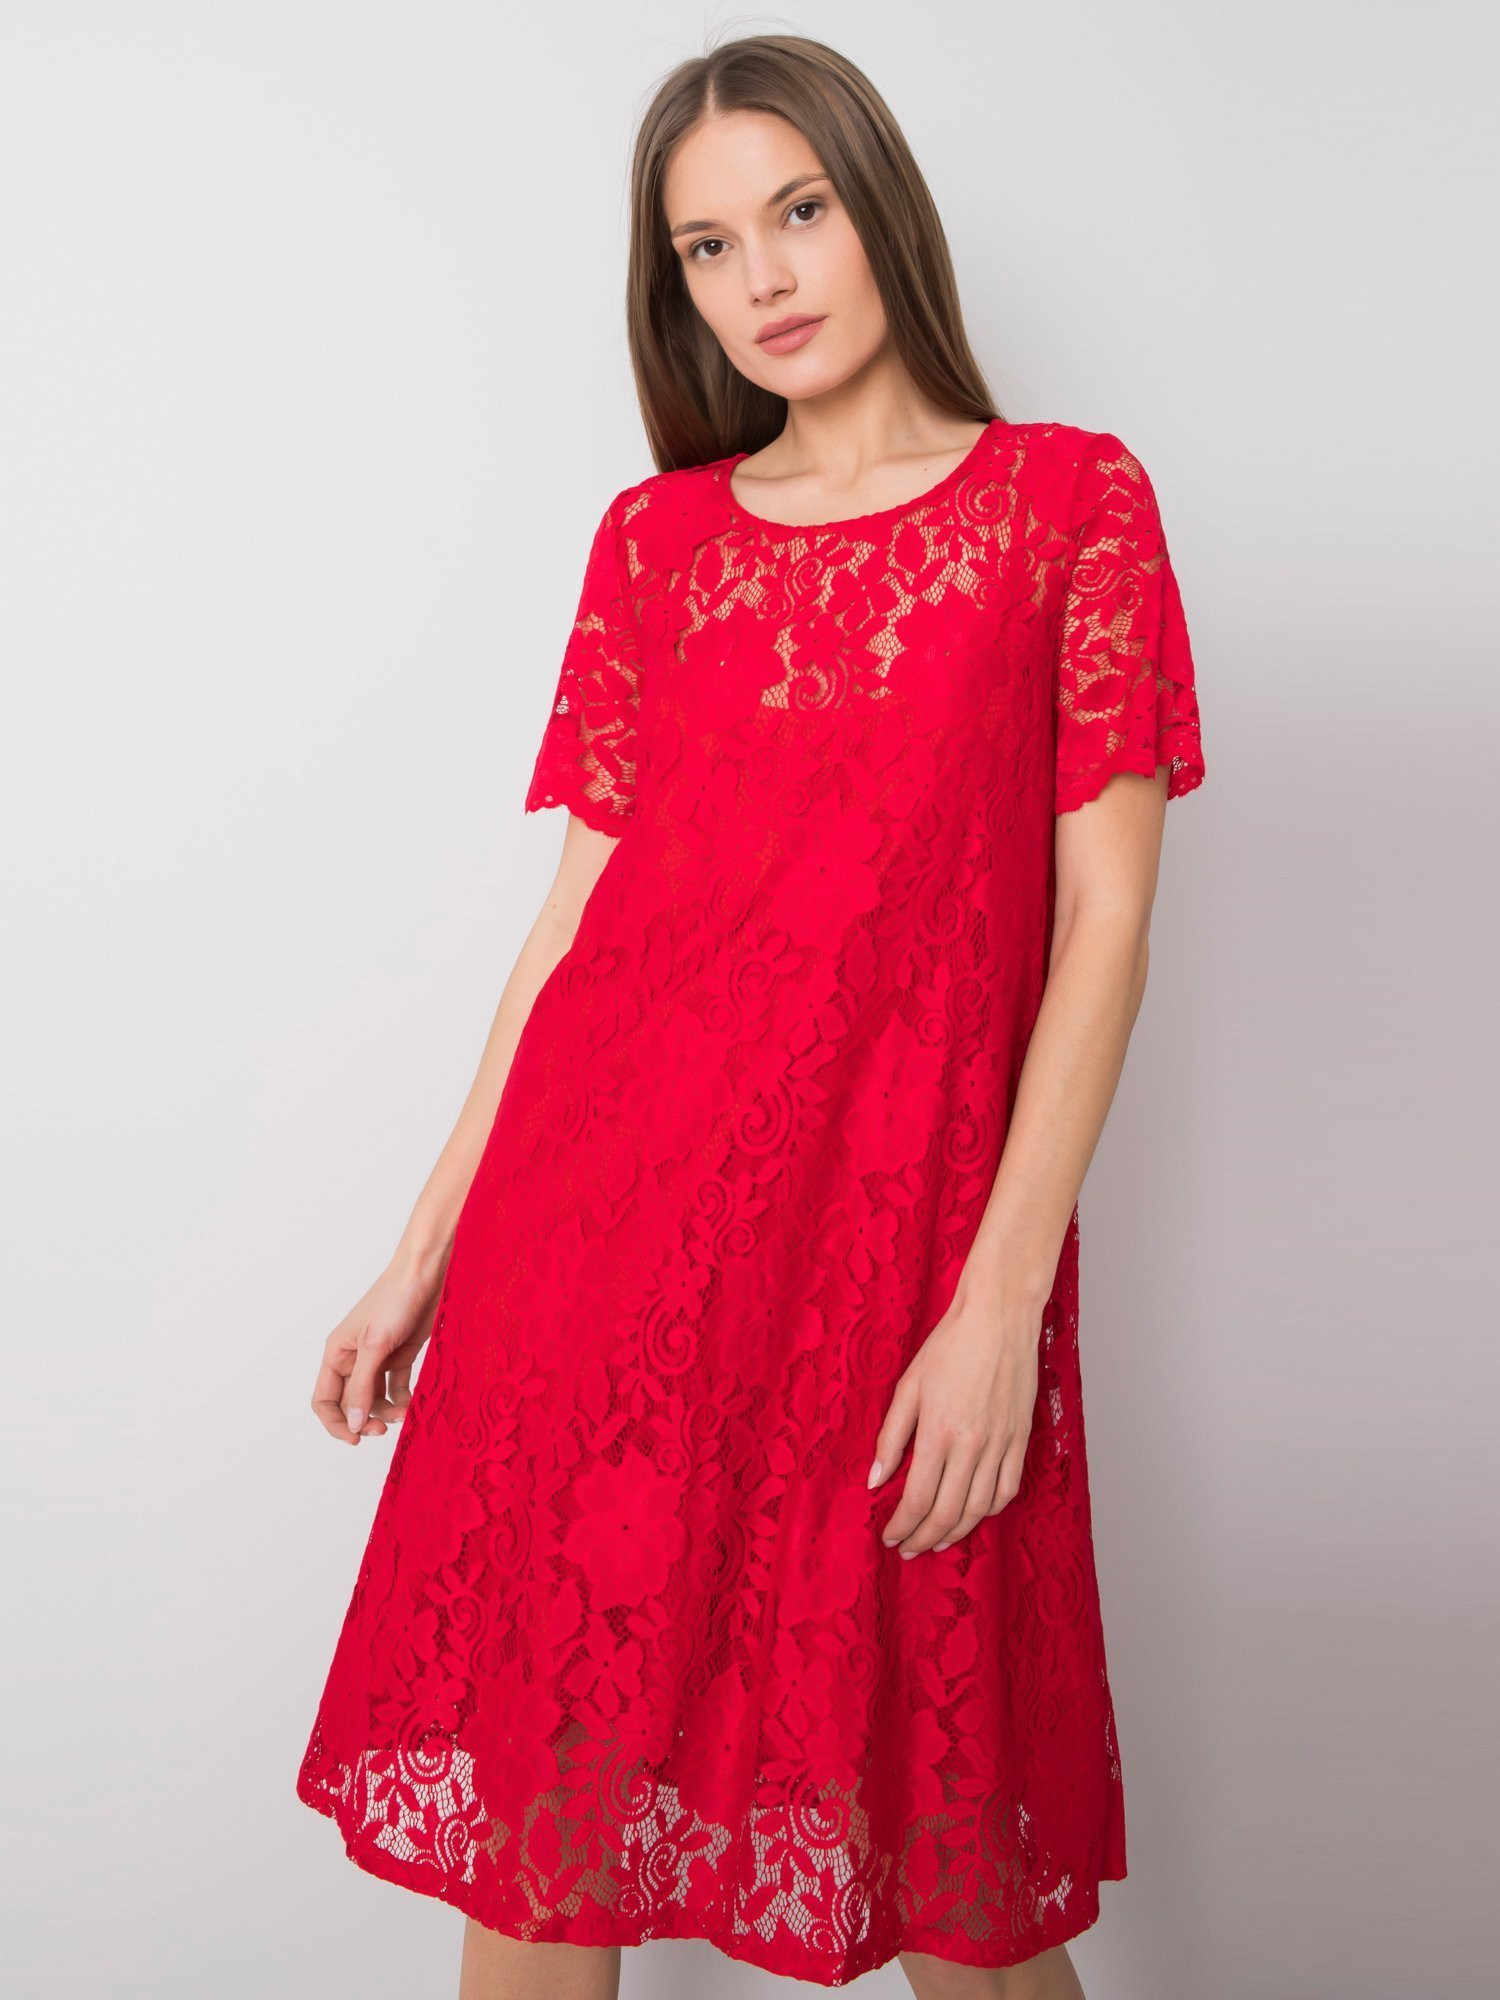 Dámské krajkové šaty KB110 - FPrice S červená